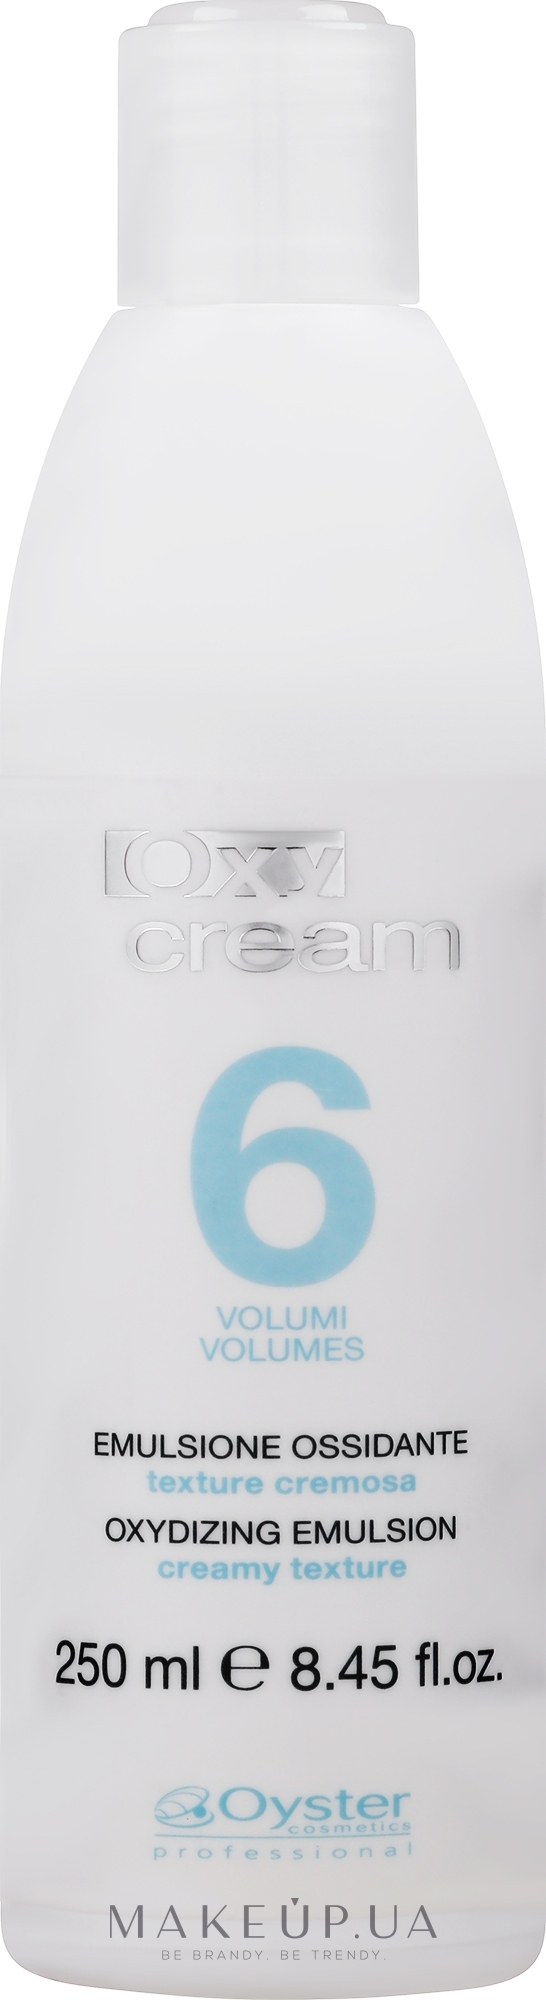 Окислитель 6 Vol 1,8% - Oyster Cosmetics Oxy Cream Oxydant — фото 250ml